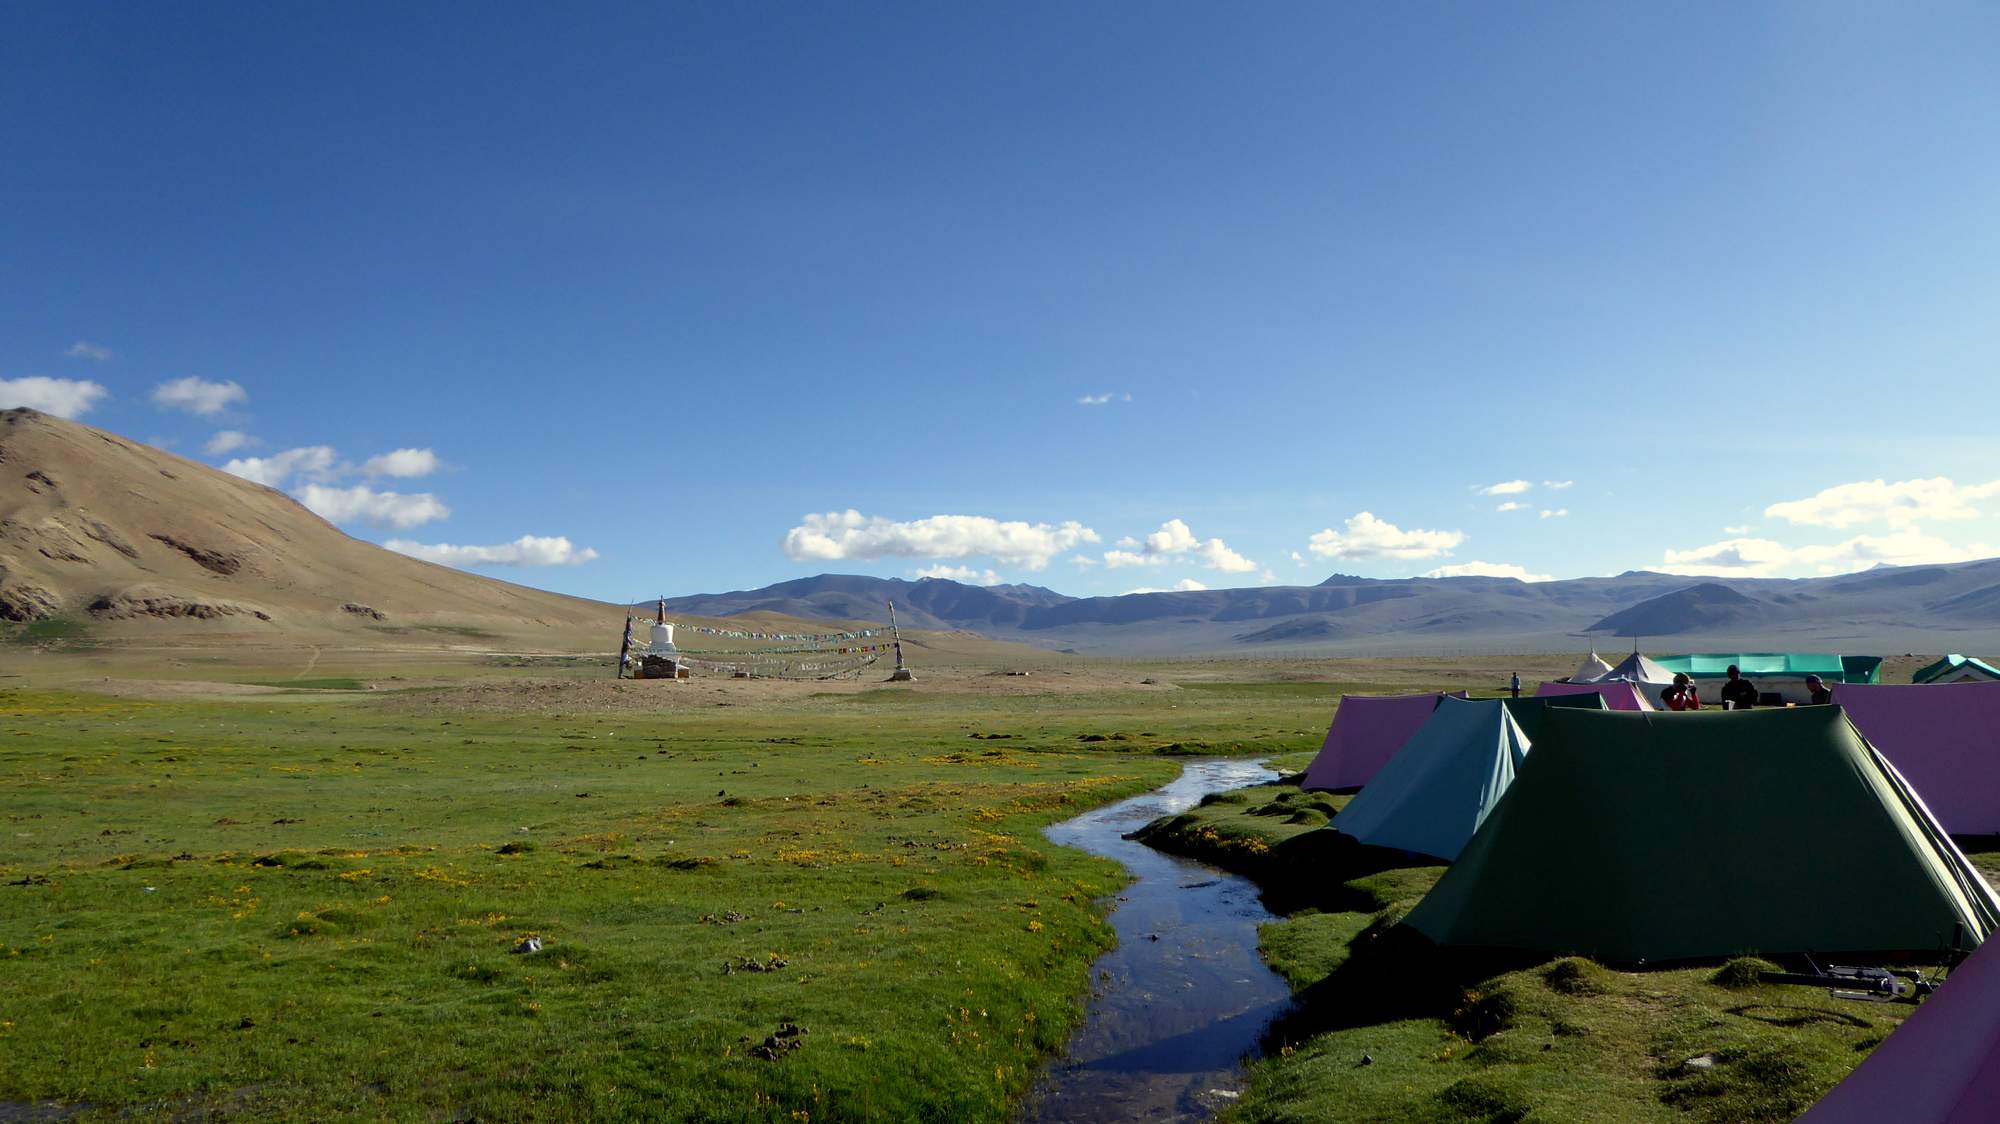 camping at altitude India himalaya